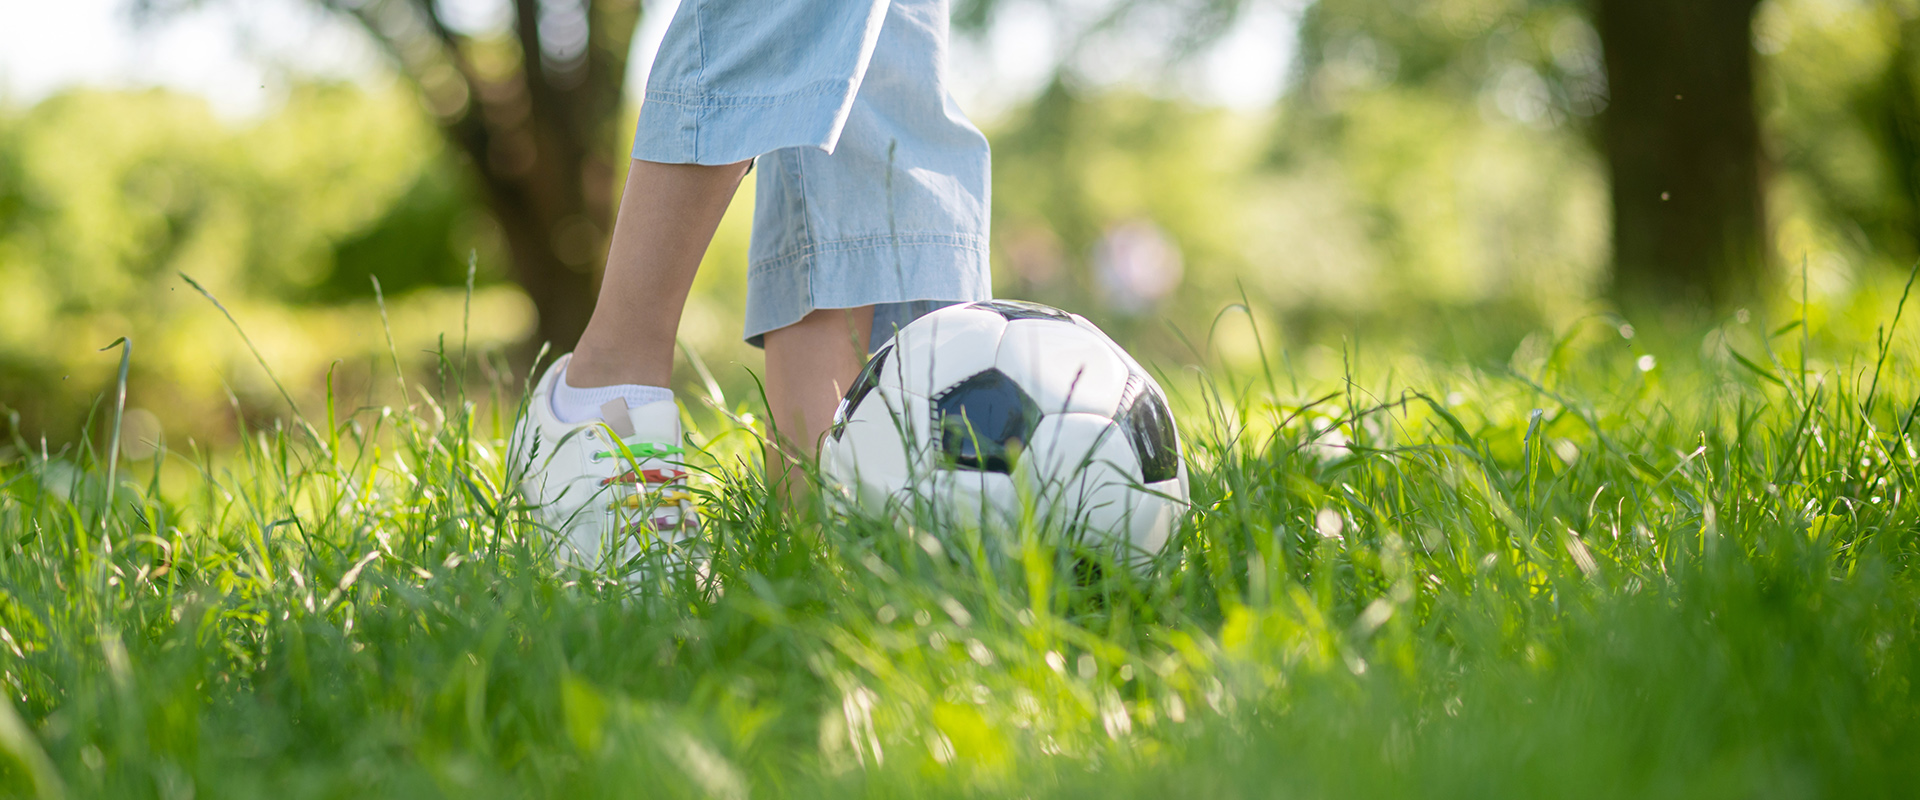 Ett par fötter sparkar en fotboll på gräs.